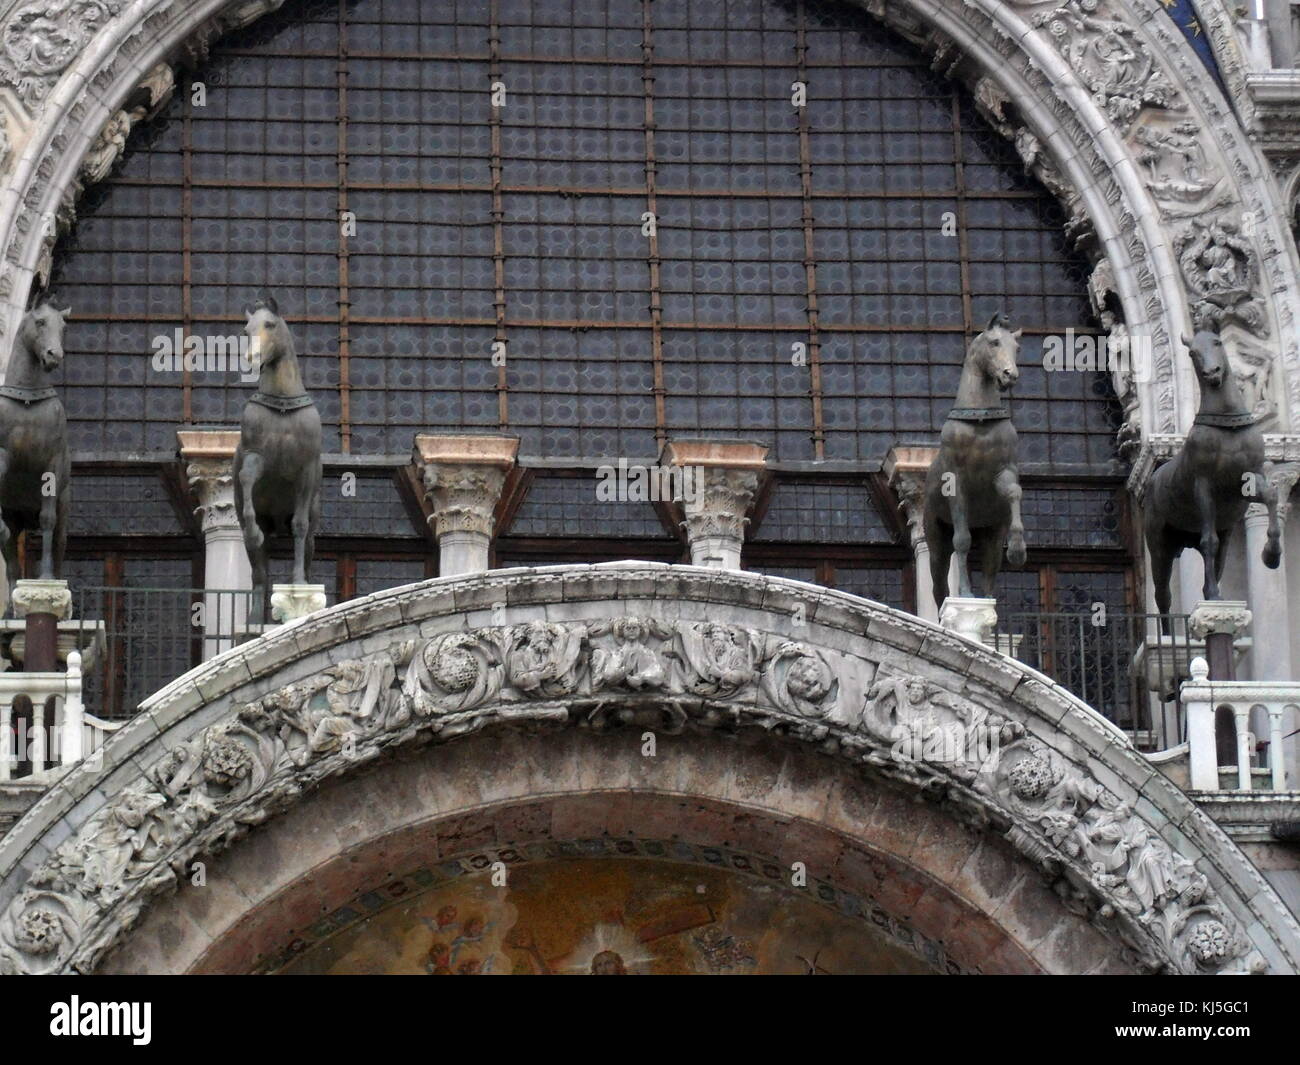 Basilica Cattedrale di San Marco e Basilica di San Marco a Venezia, Italia settentrionale. È il più famoso della città chiese e uno dei più noti esempi di architettura Italo-Byzantine Foto Stock